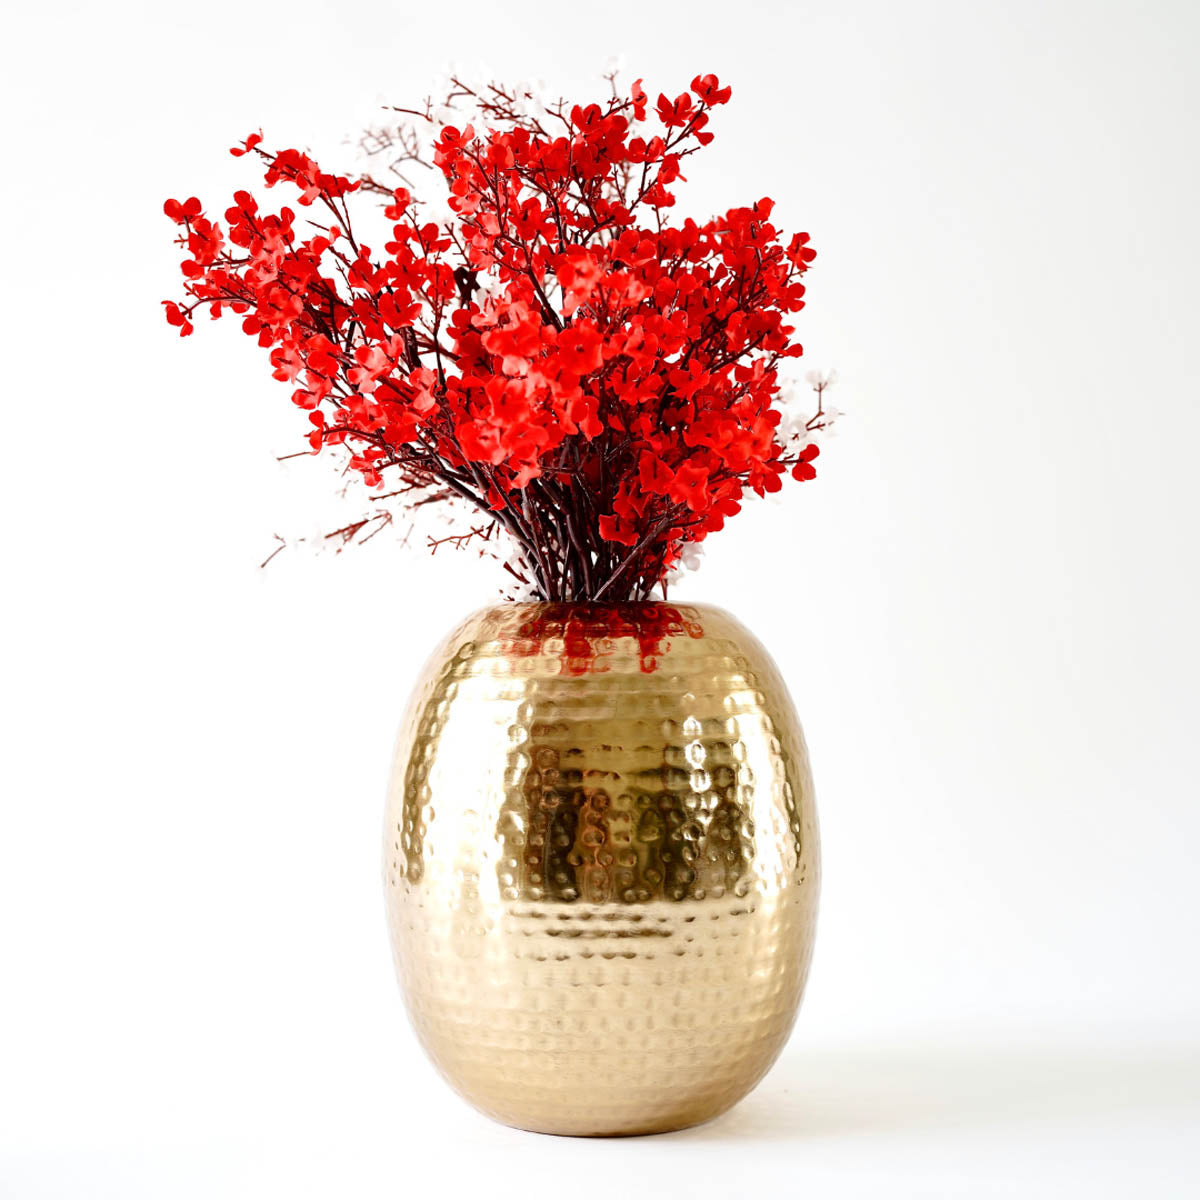 Hammered Flower vase - Gold 